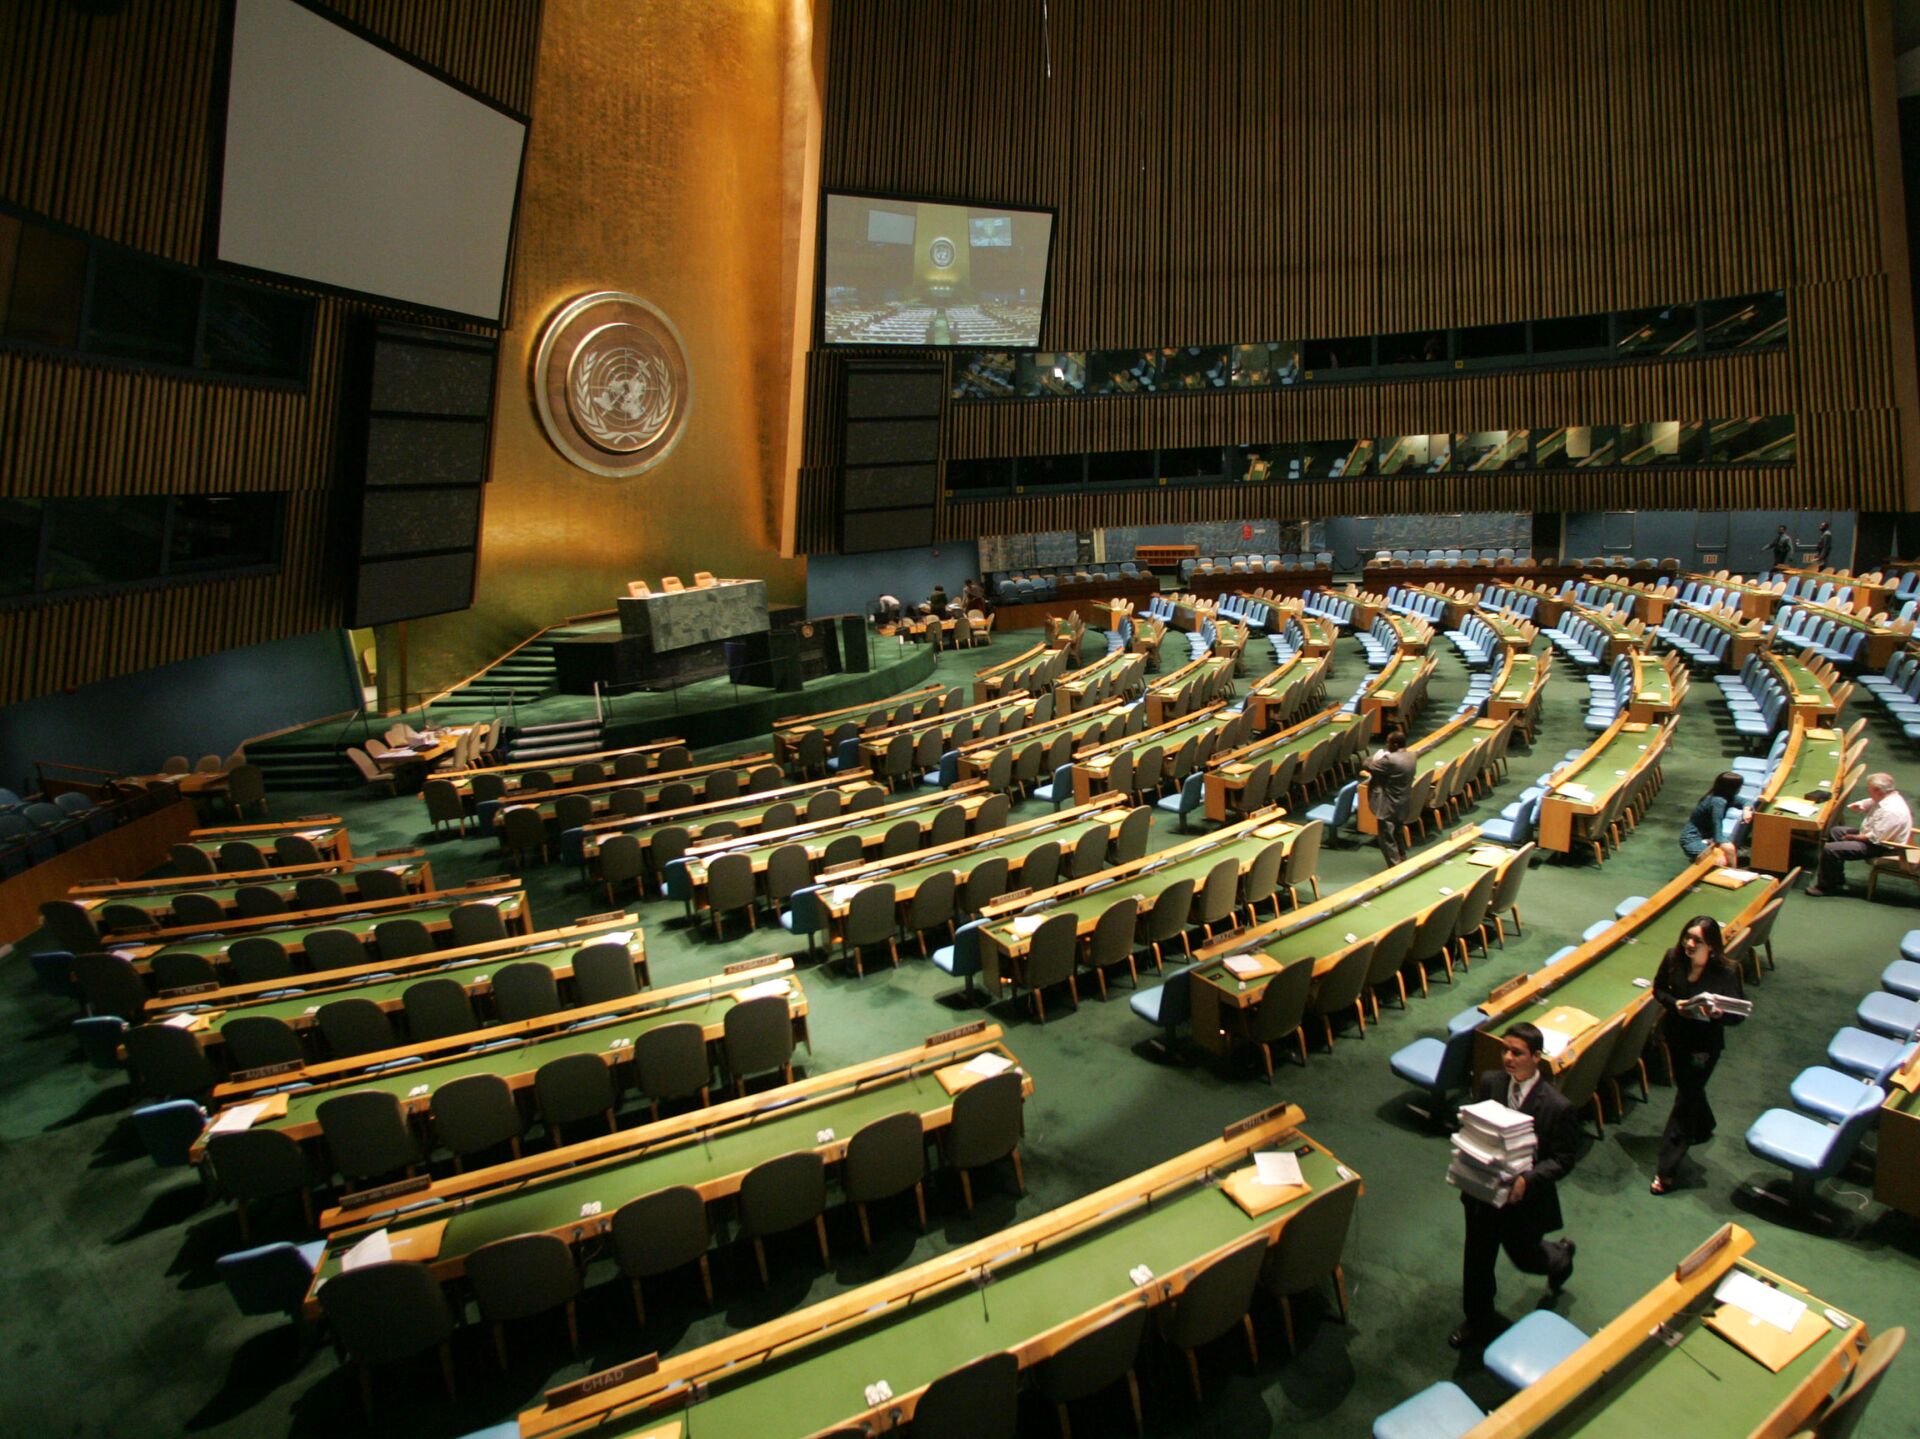 Е оон. Зал Генеральной Ассамблеи ООН. Зал заседания Генассамблеи ООН трибуна. Генеральная Ассамблея ООН 2022. Зал Генеральной Ассамблеи ООН В Нью-Йорке.